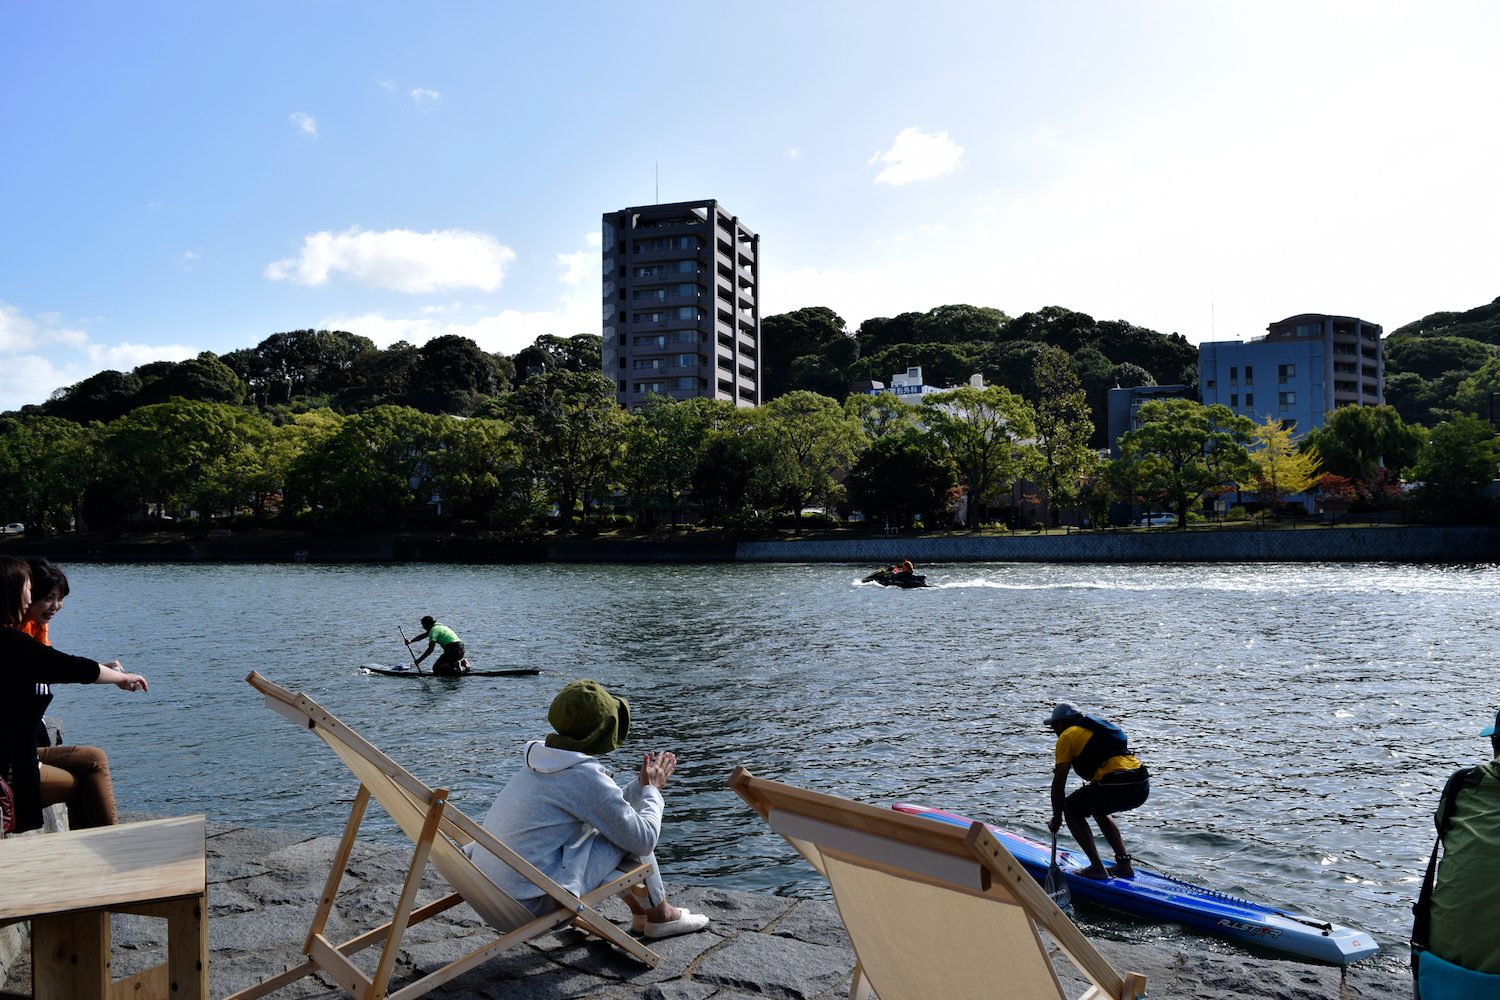 川を楽しむカルチャー River Do 川辺で稲なわづくり 旧広島市民球場跡地西側の川辺 11 8 Satomachi さとまち